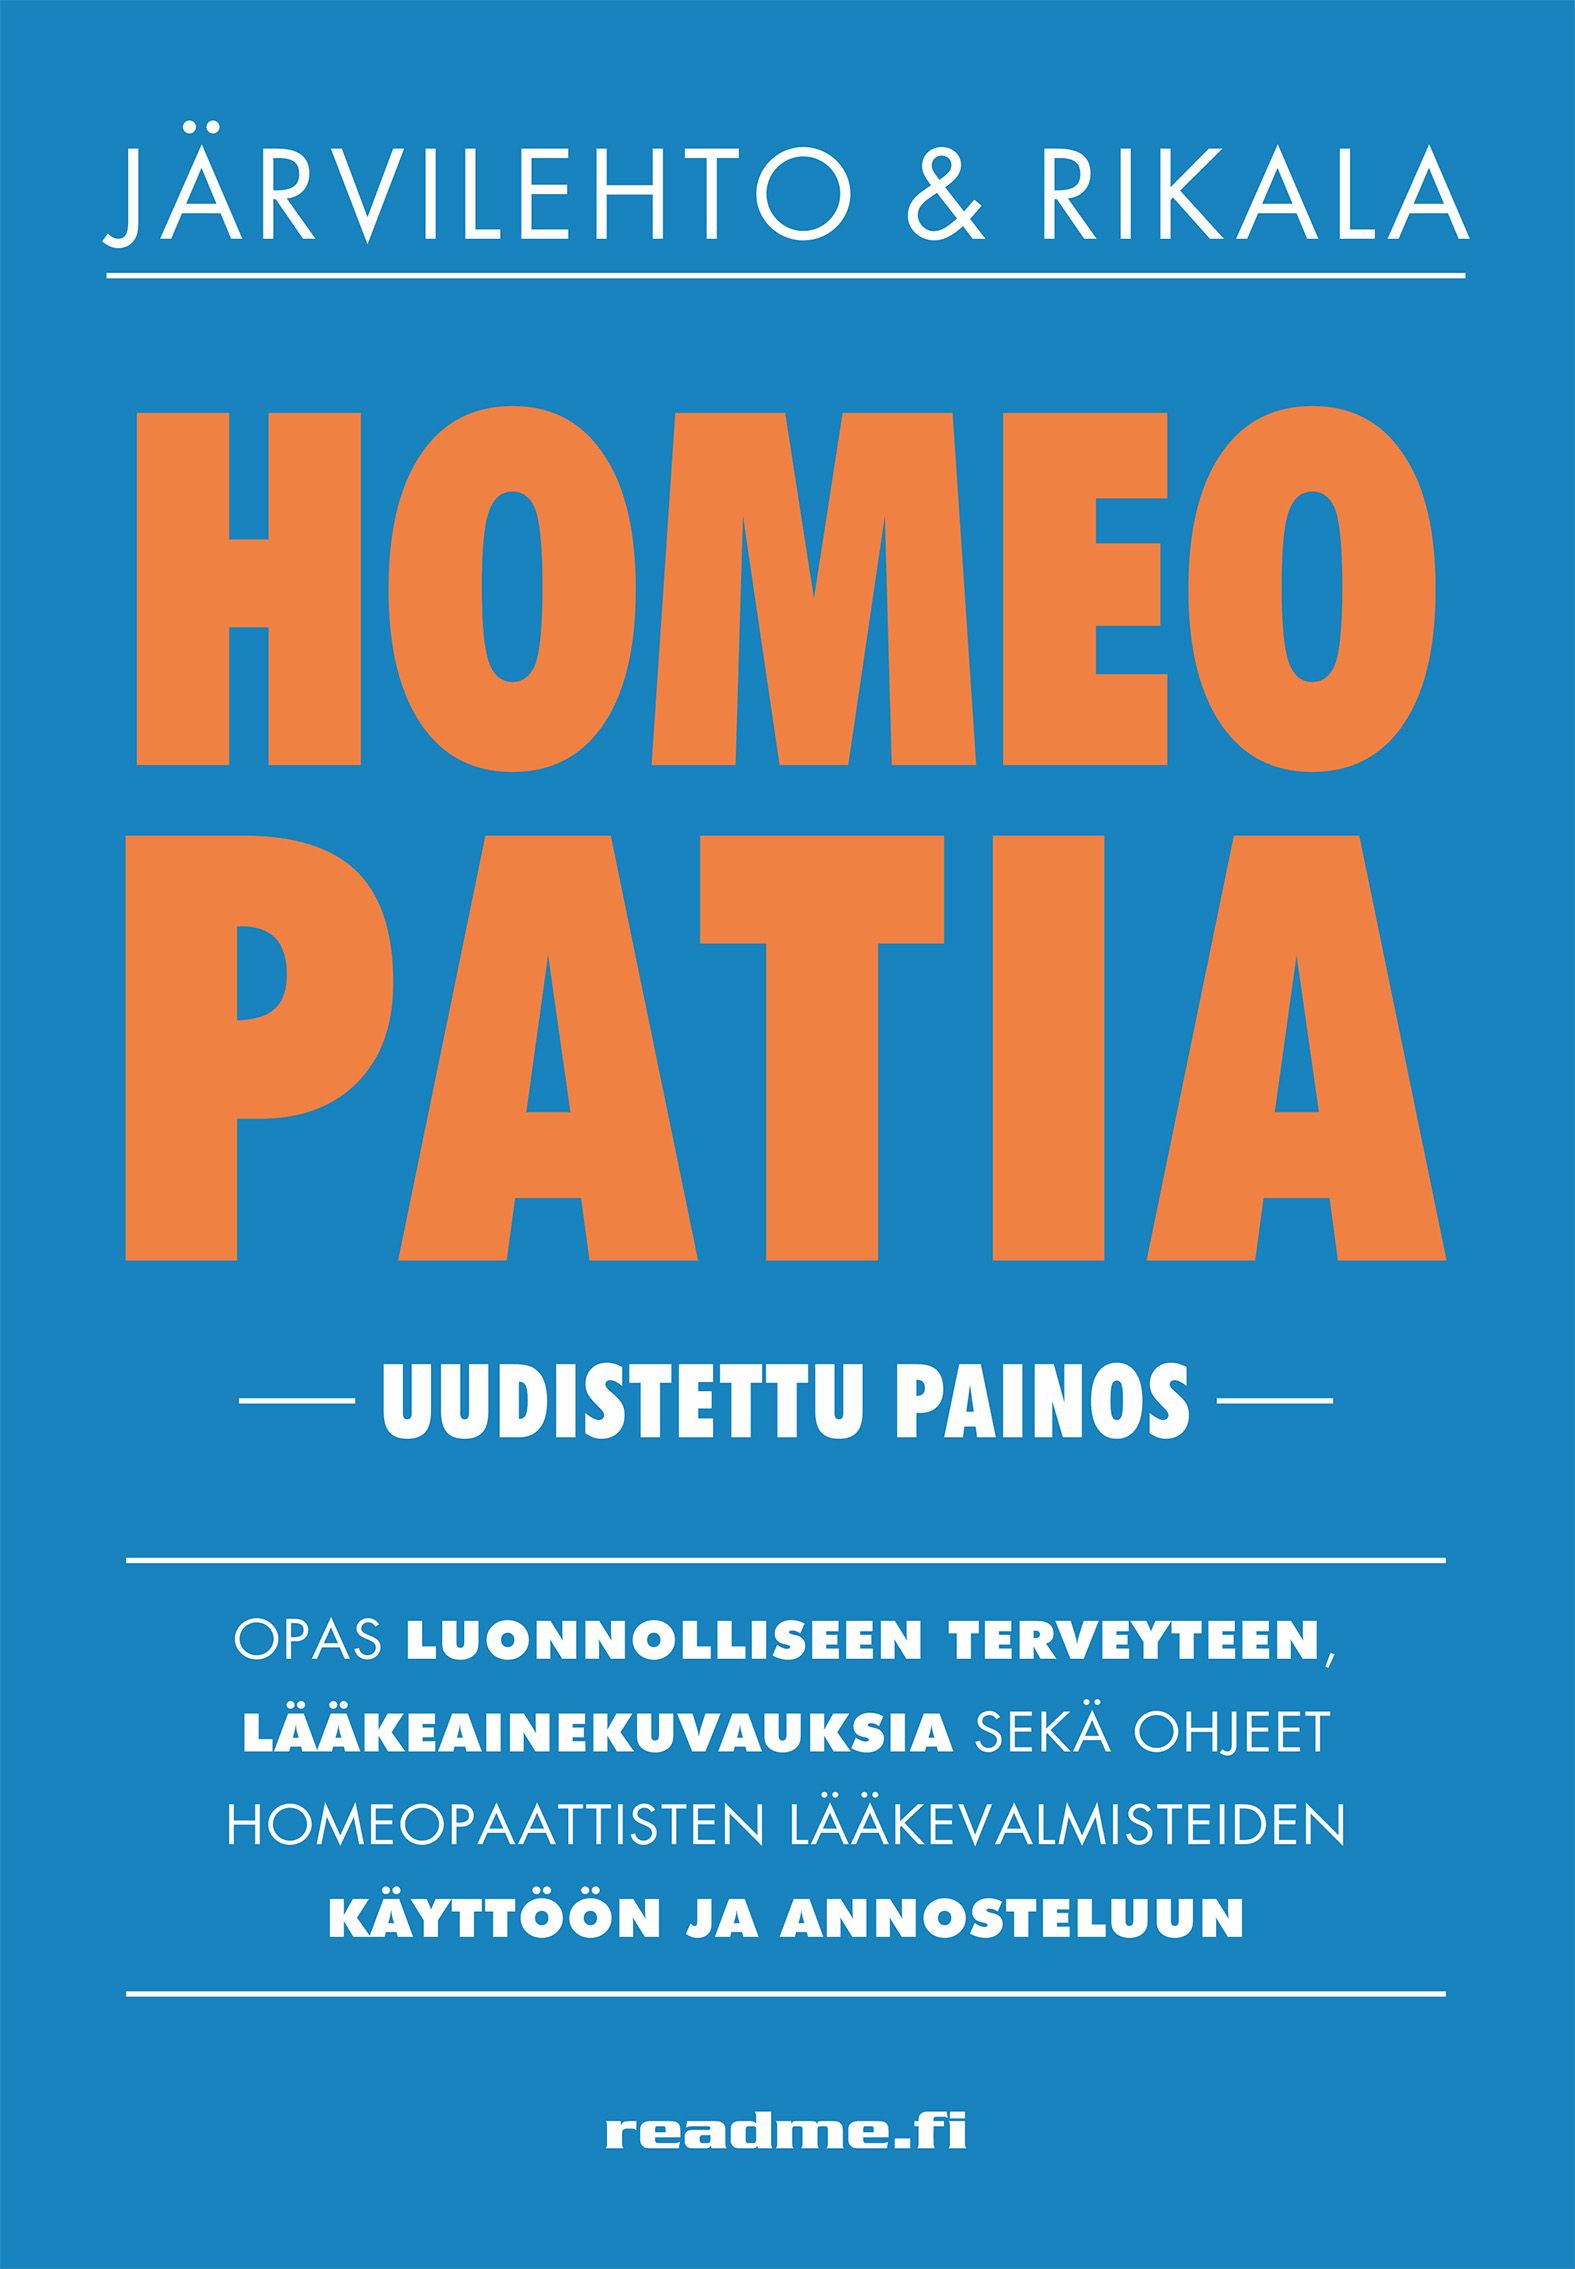 Satu Järvilehto & Katja Rikala : Homeopatia - opas luonnolliseen terveyteen